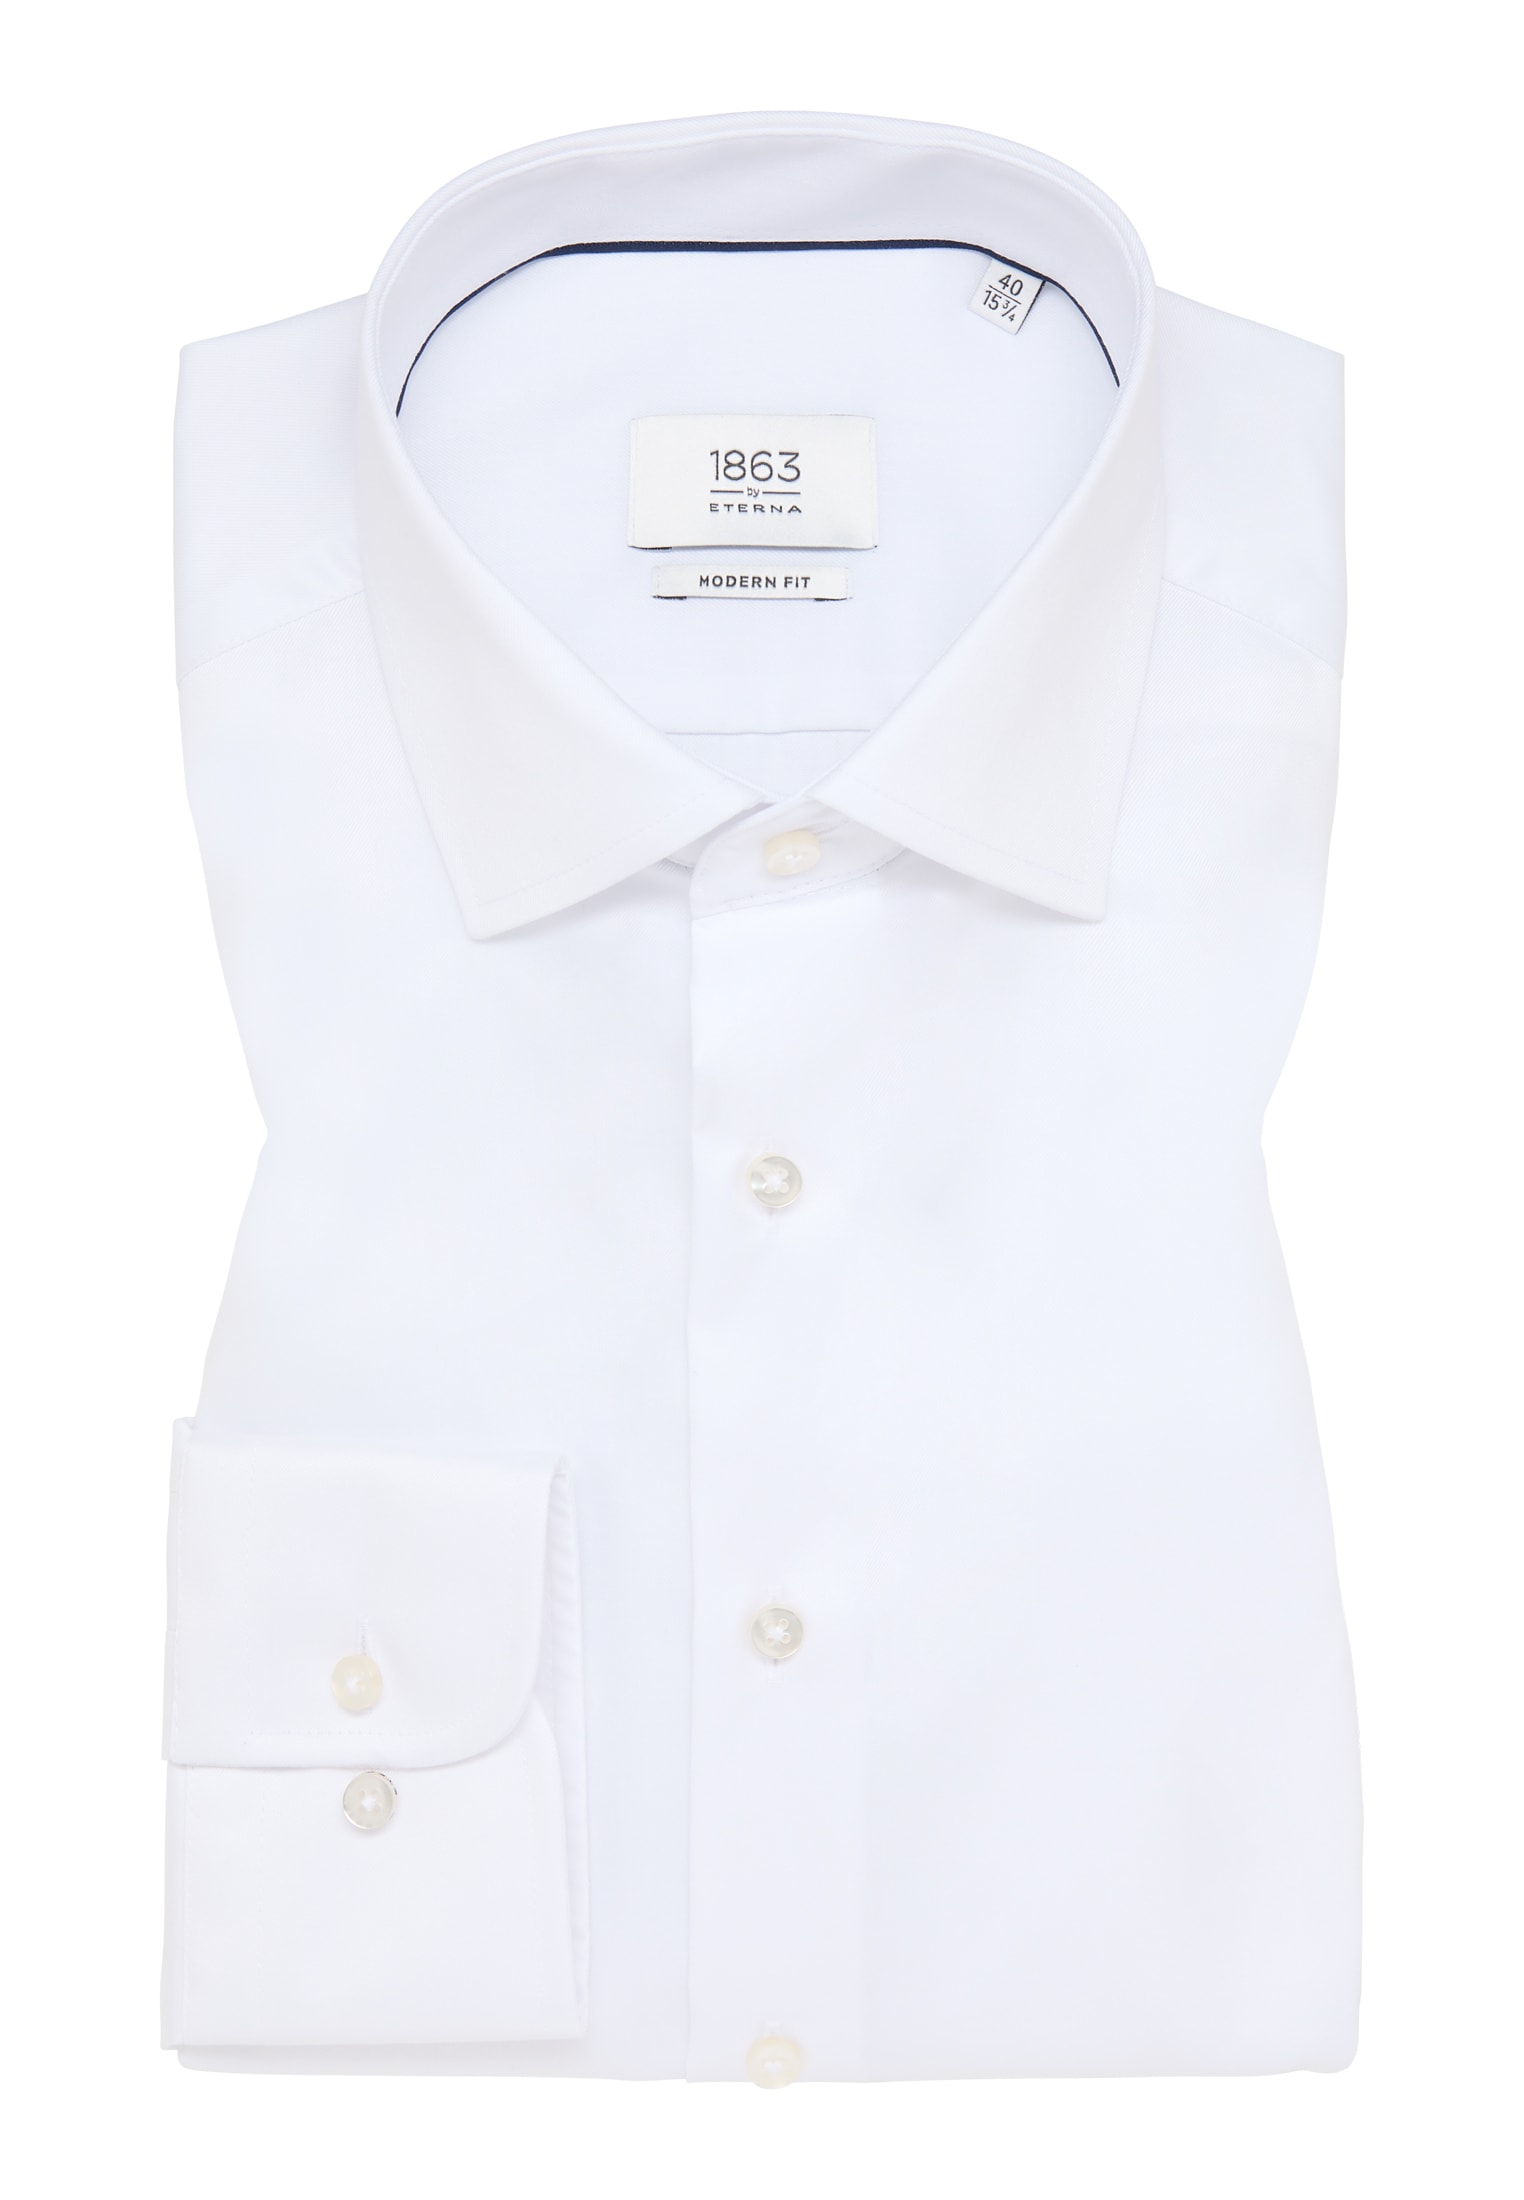 MODERN FIT Luxury Shirt | in | | (68 cm) weiß Arm 42 | weiß unifarben verlängerter 1SH04302-00-01-42-68